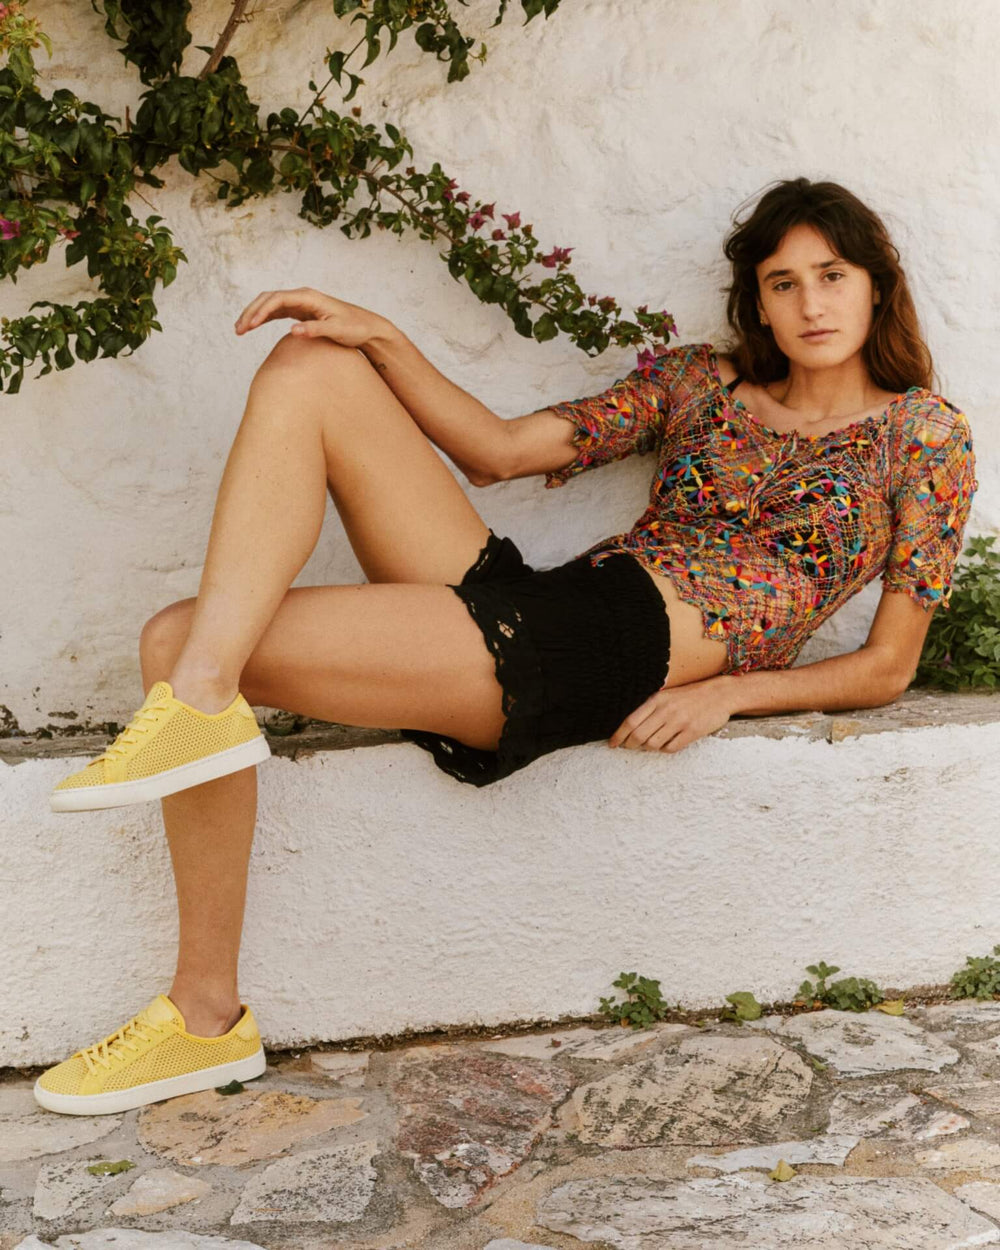 woman wearing yellow shoes